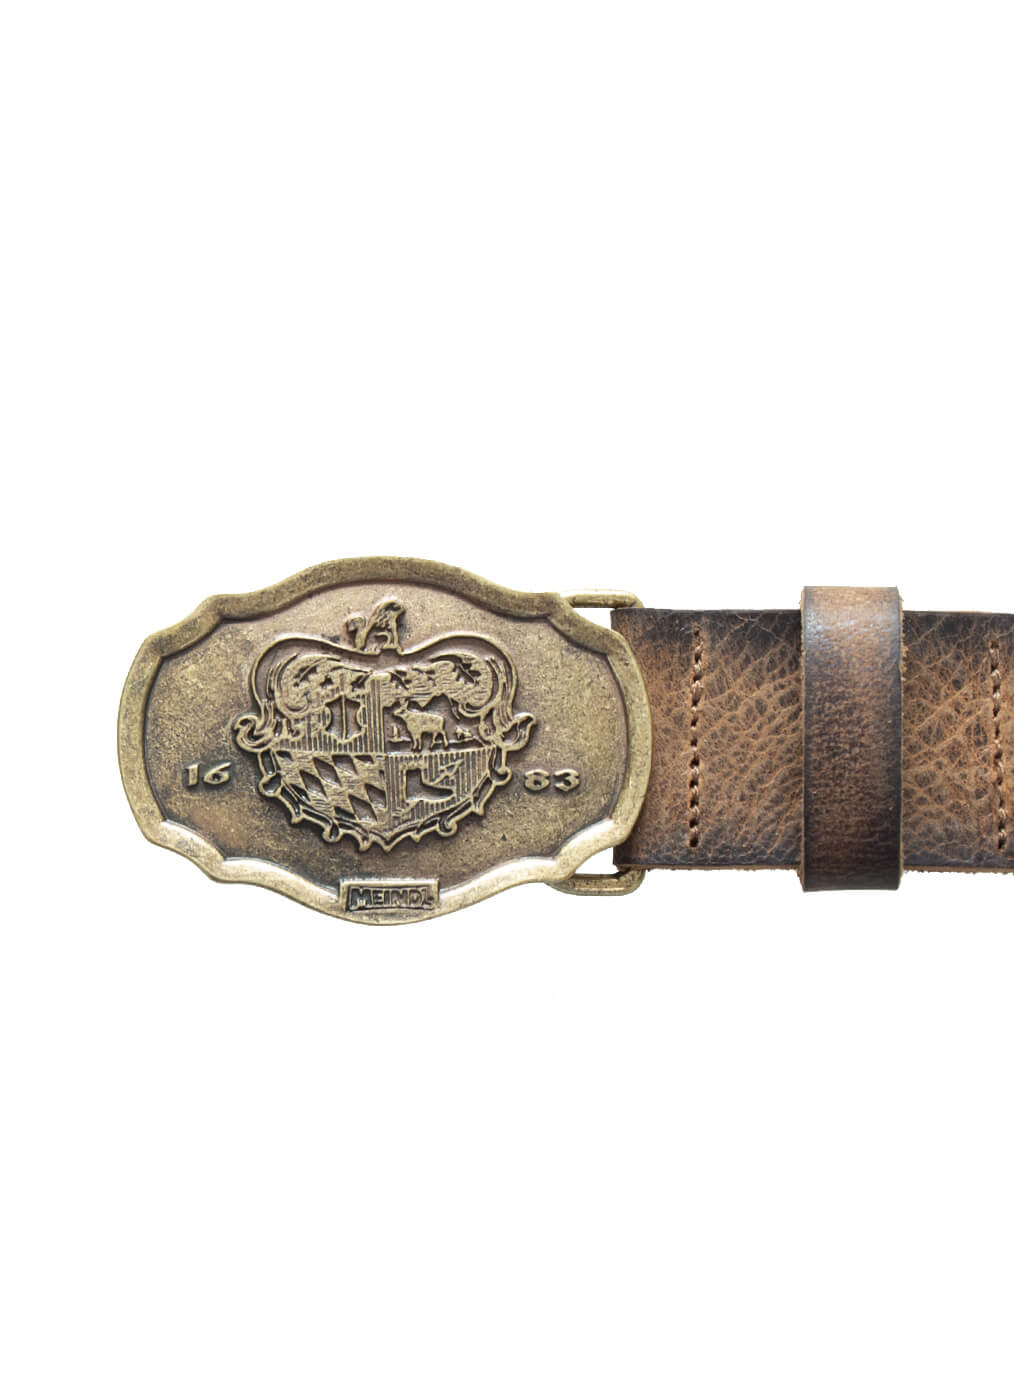 Leather Belt “Sonnblick”, brass bisam